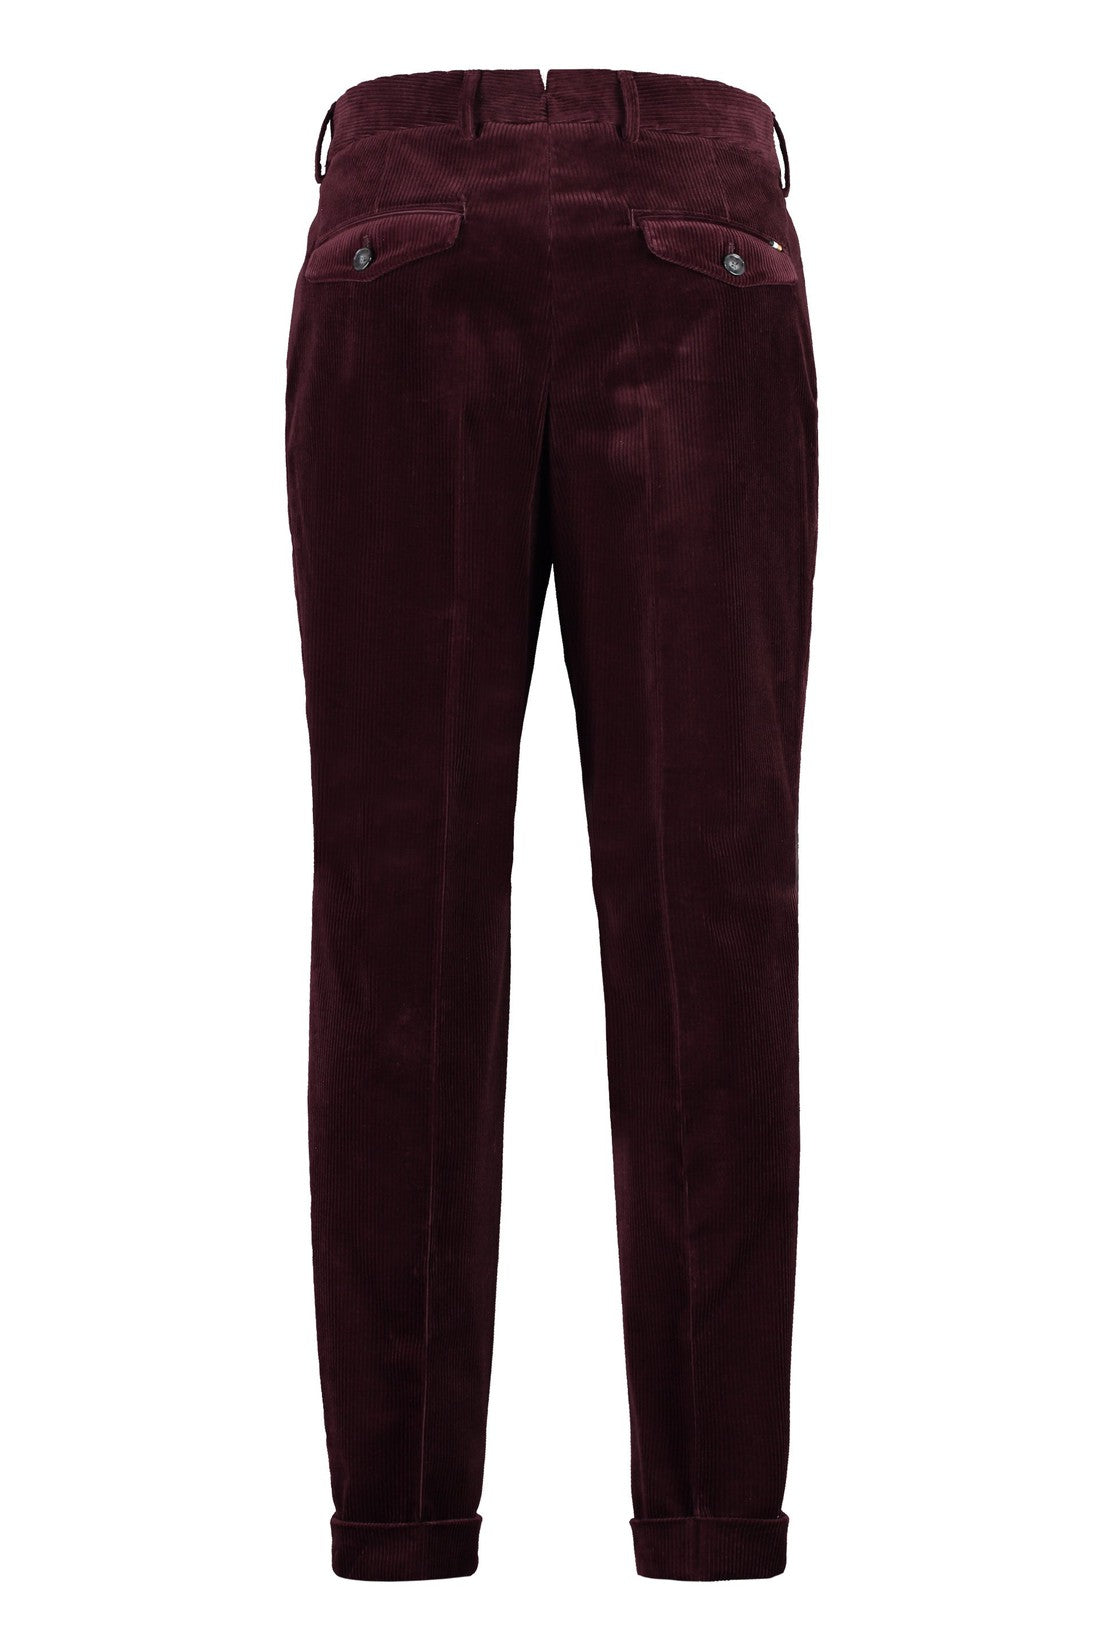 BOSS-OUTLET-SALE-Corduroy trousers-ARCHIVIST